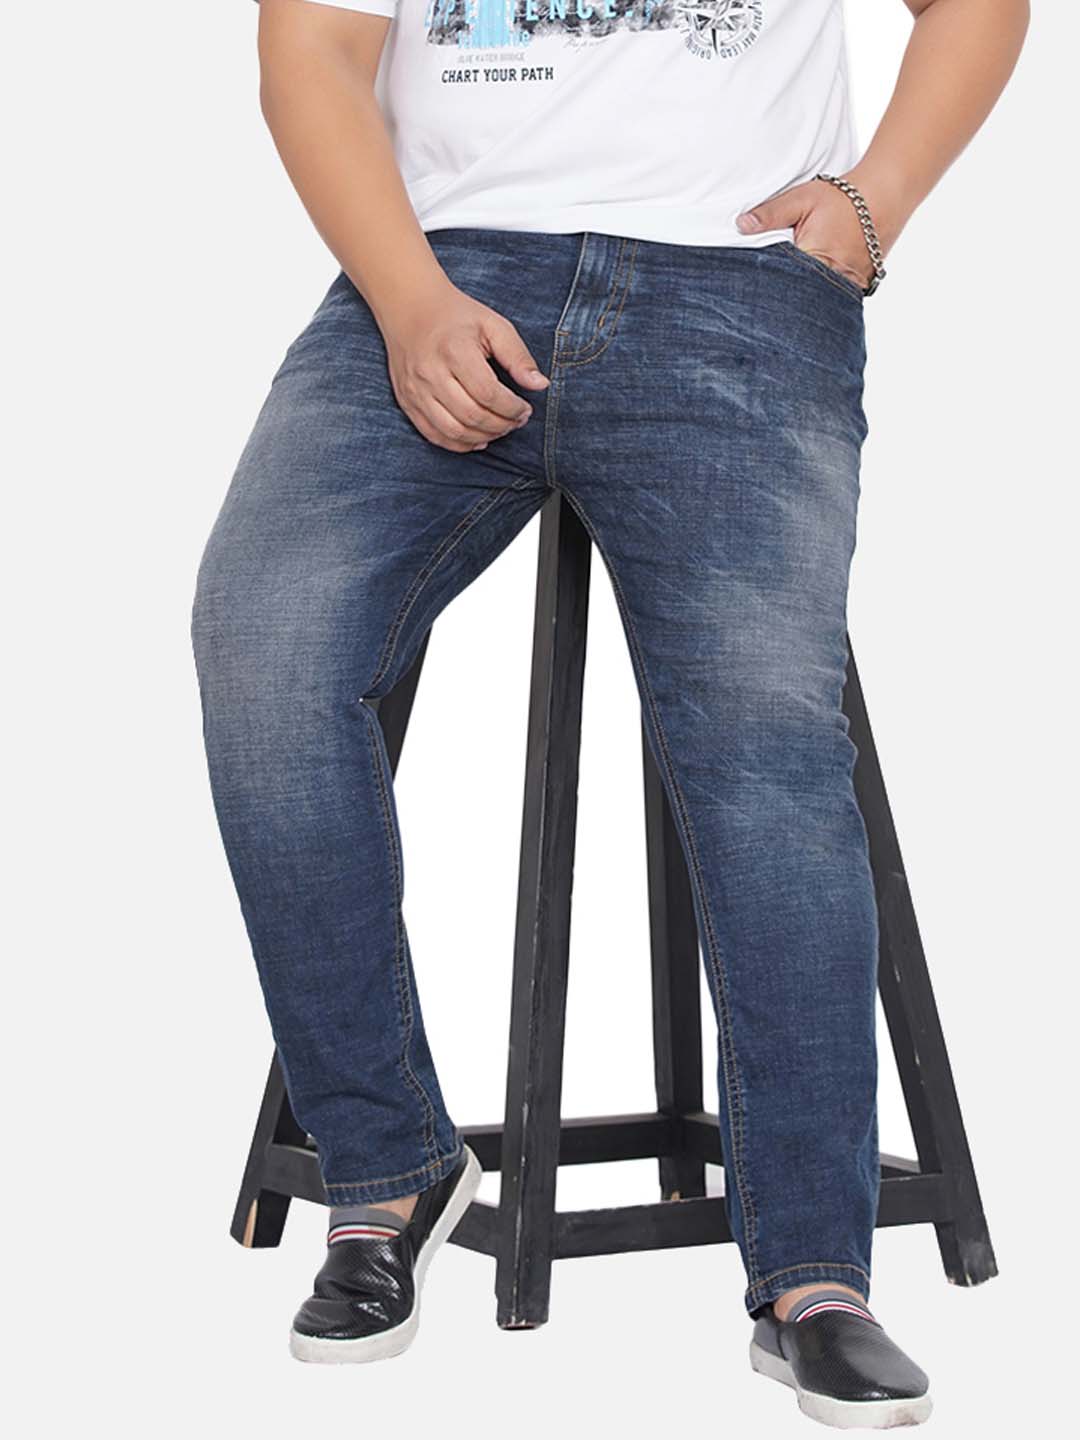 bottomwear/jeans/PJPJ6045/pjpj6045-1.jpg